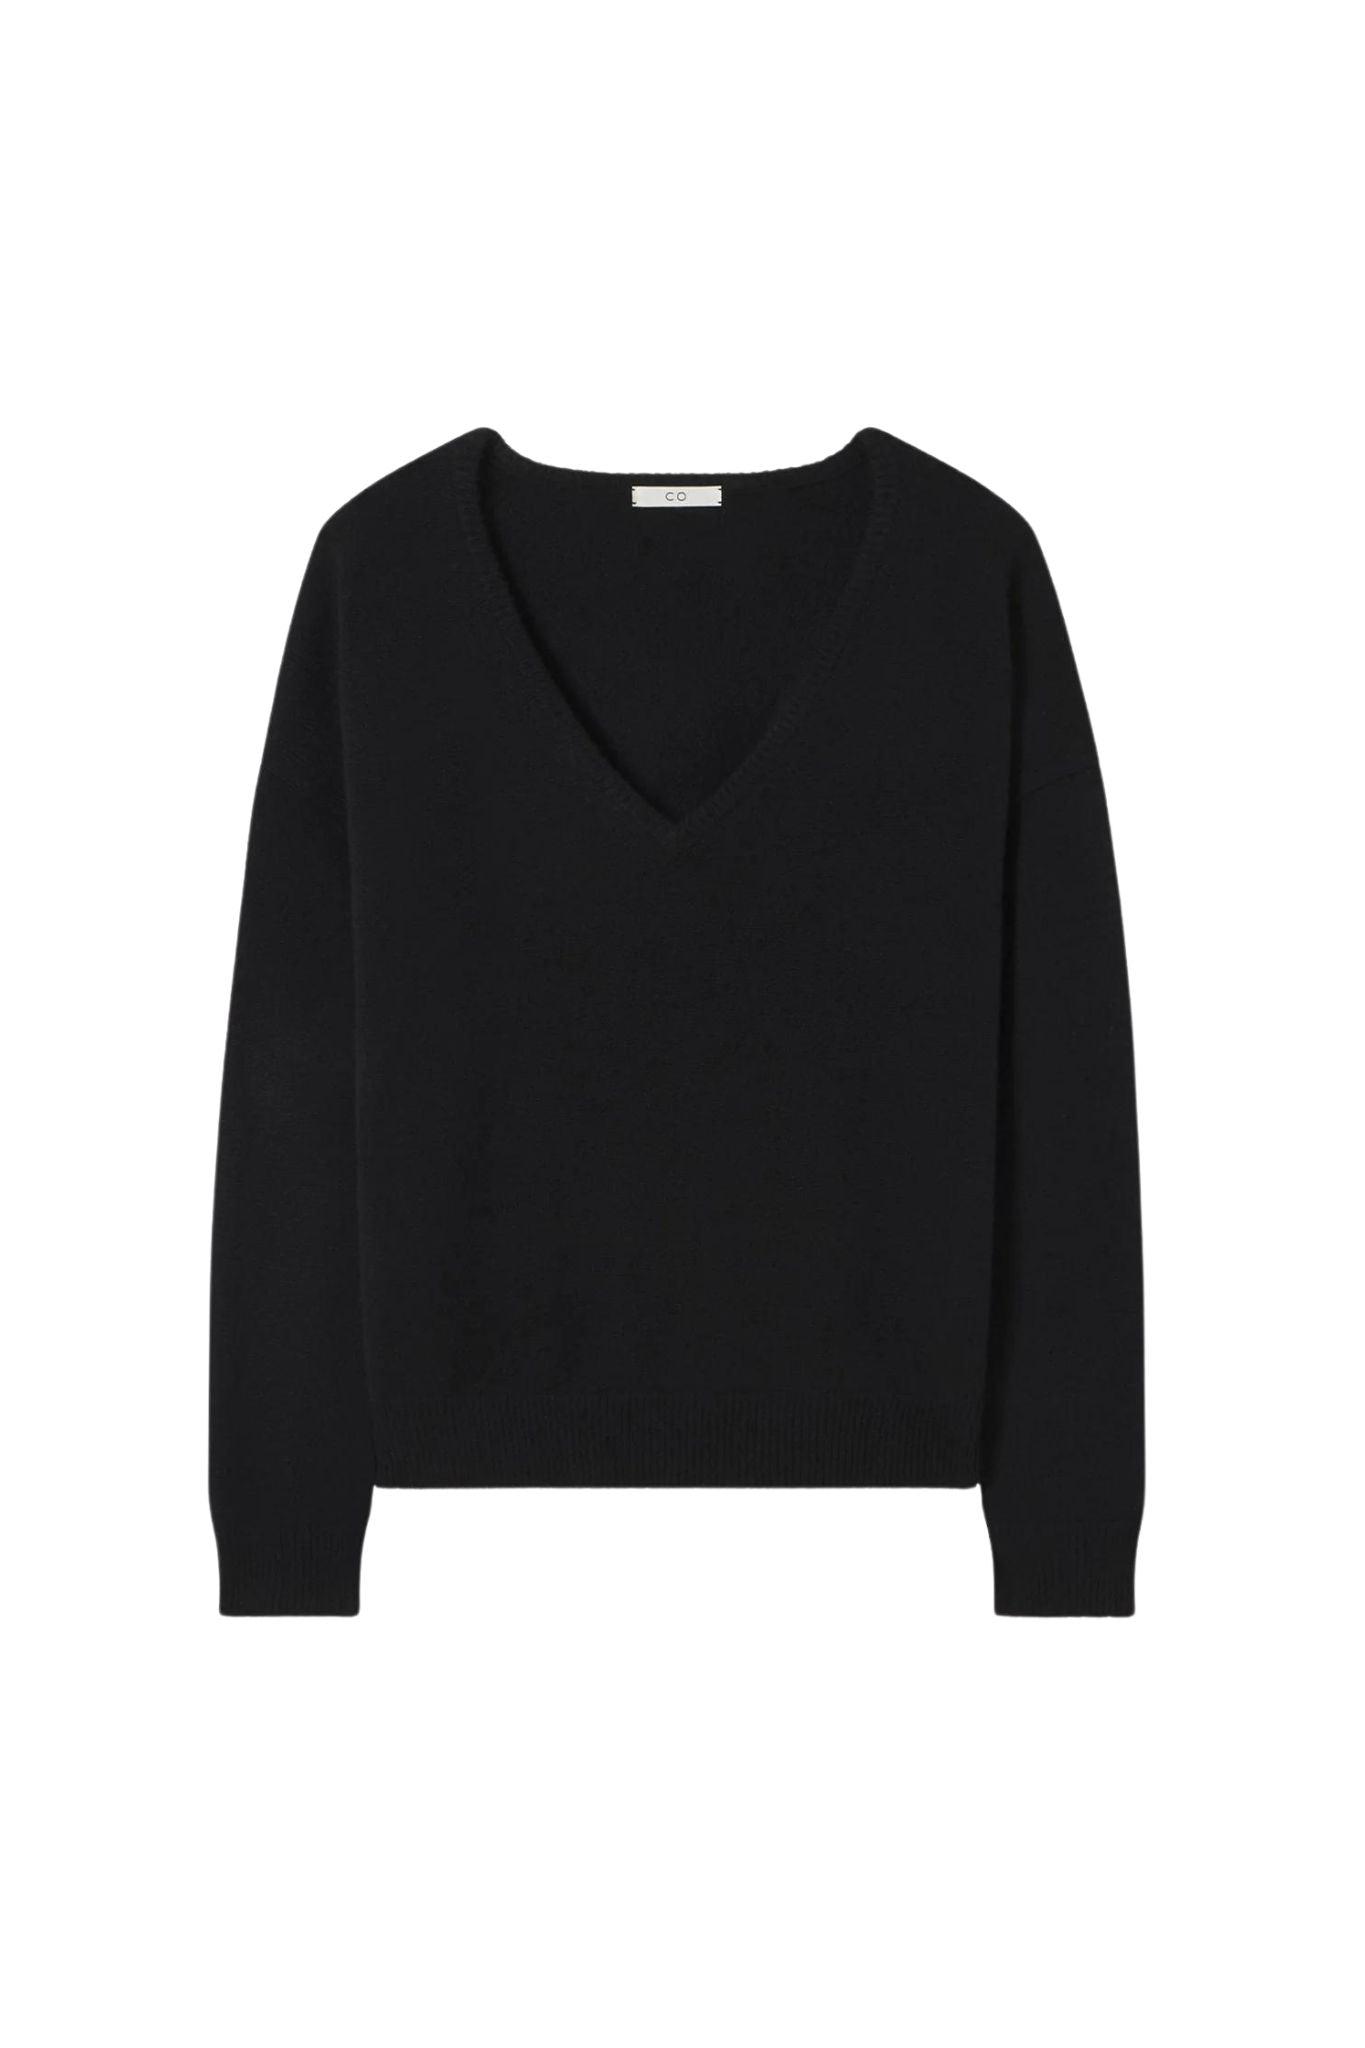 Co. V-neck Sweater in Black